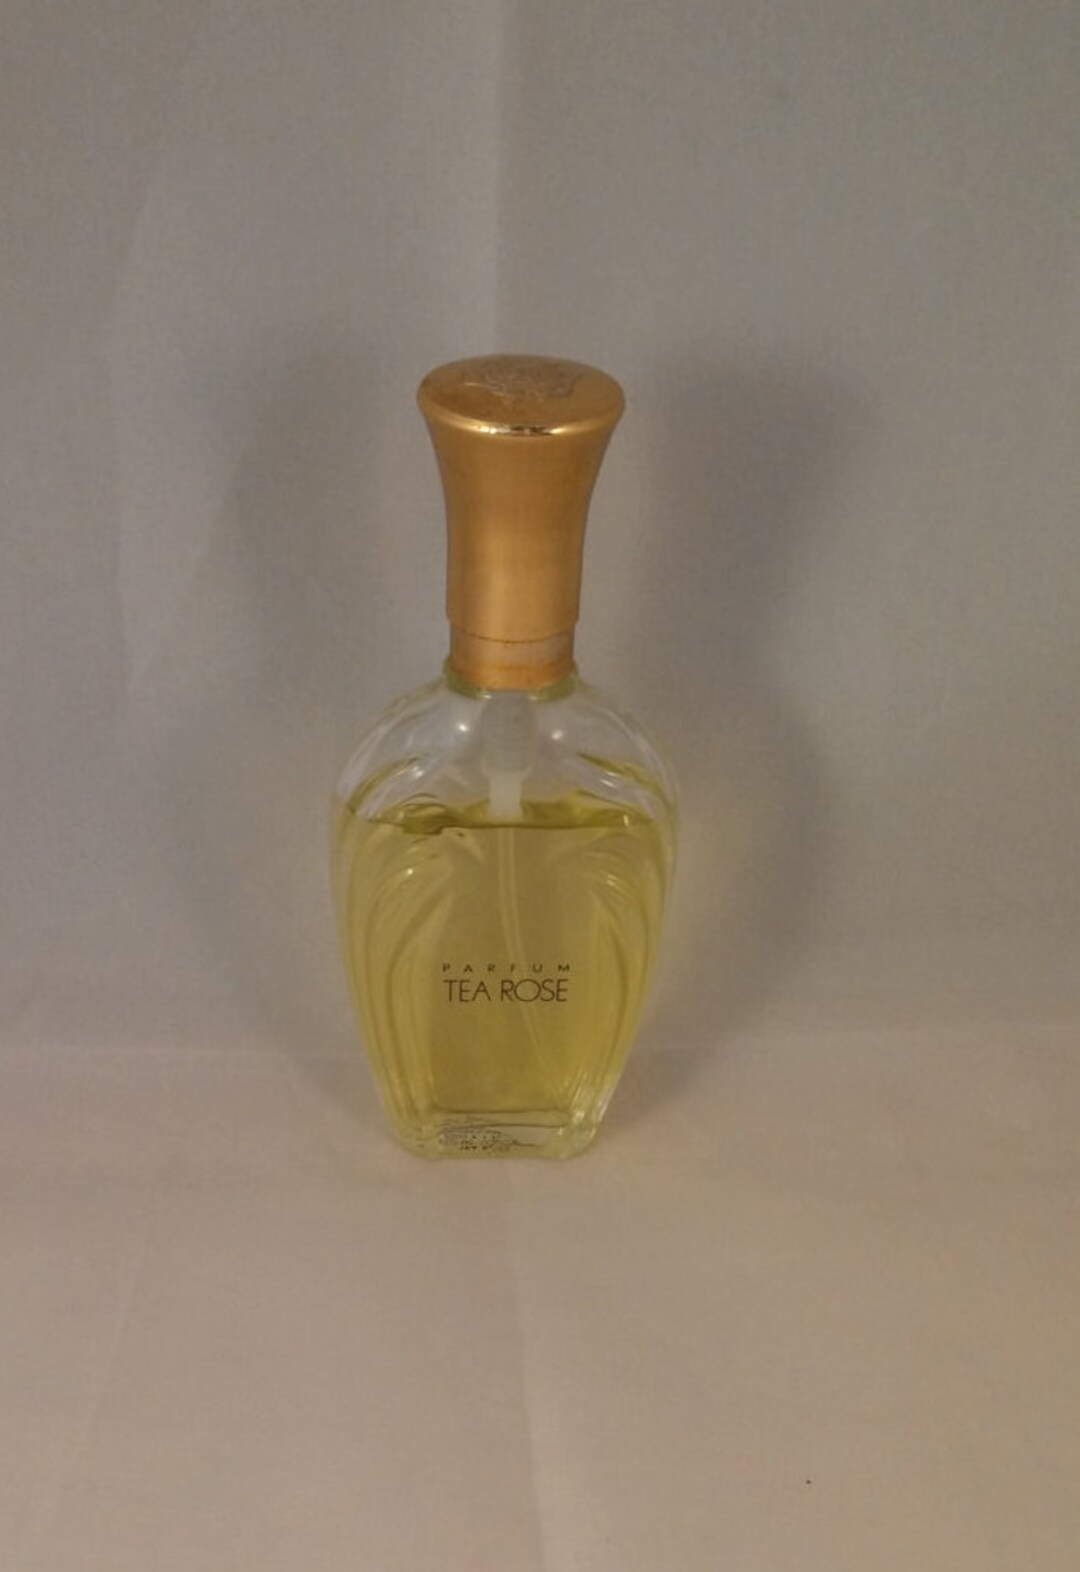 Vintage Tea Rose Eau De Parfum Perfume Decanter by Perfume Workshop - Etsy